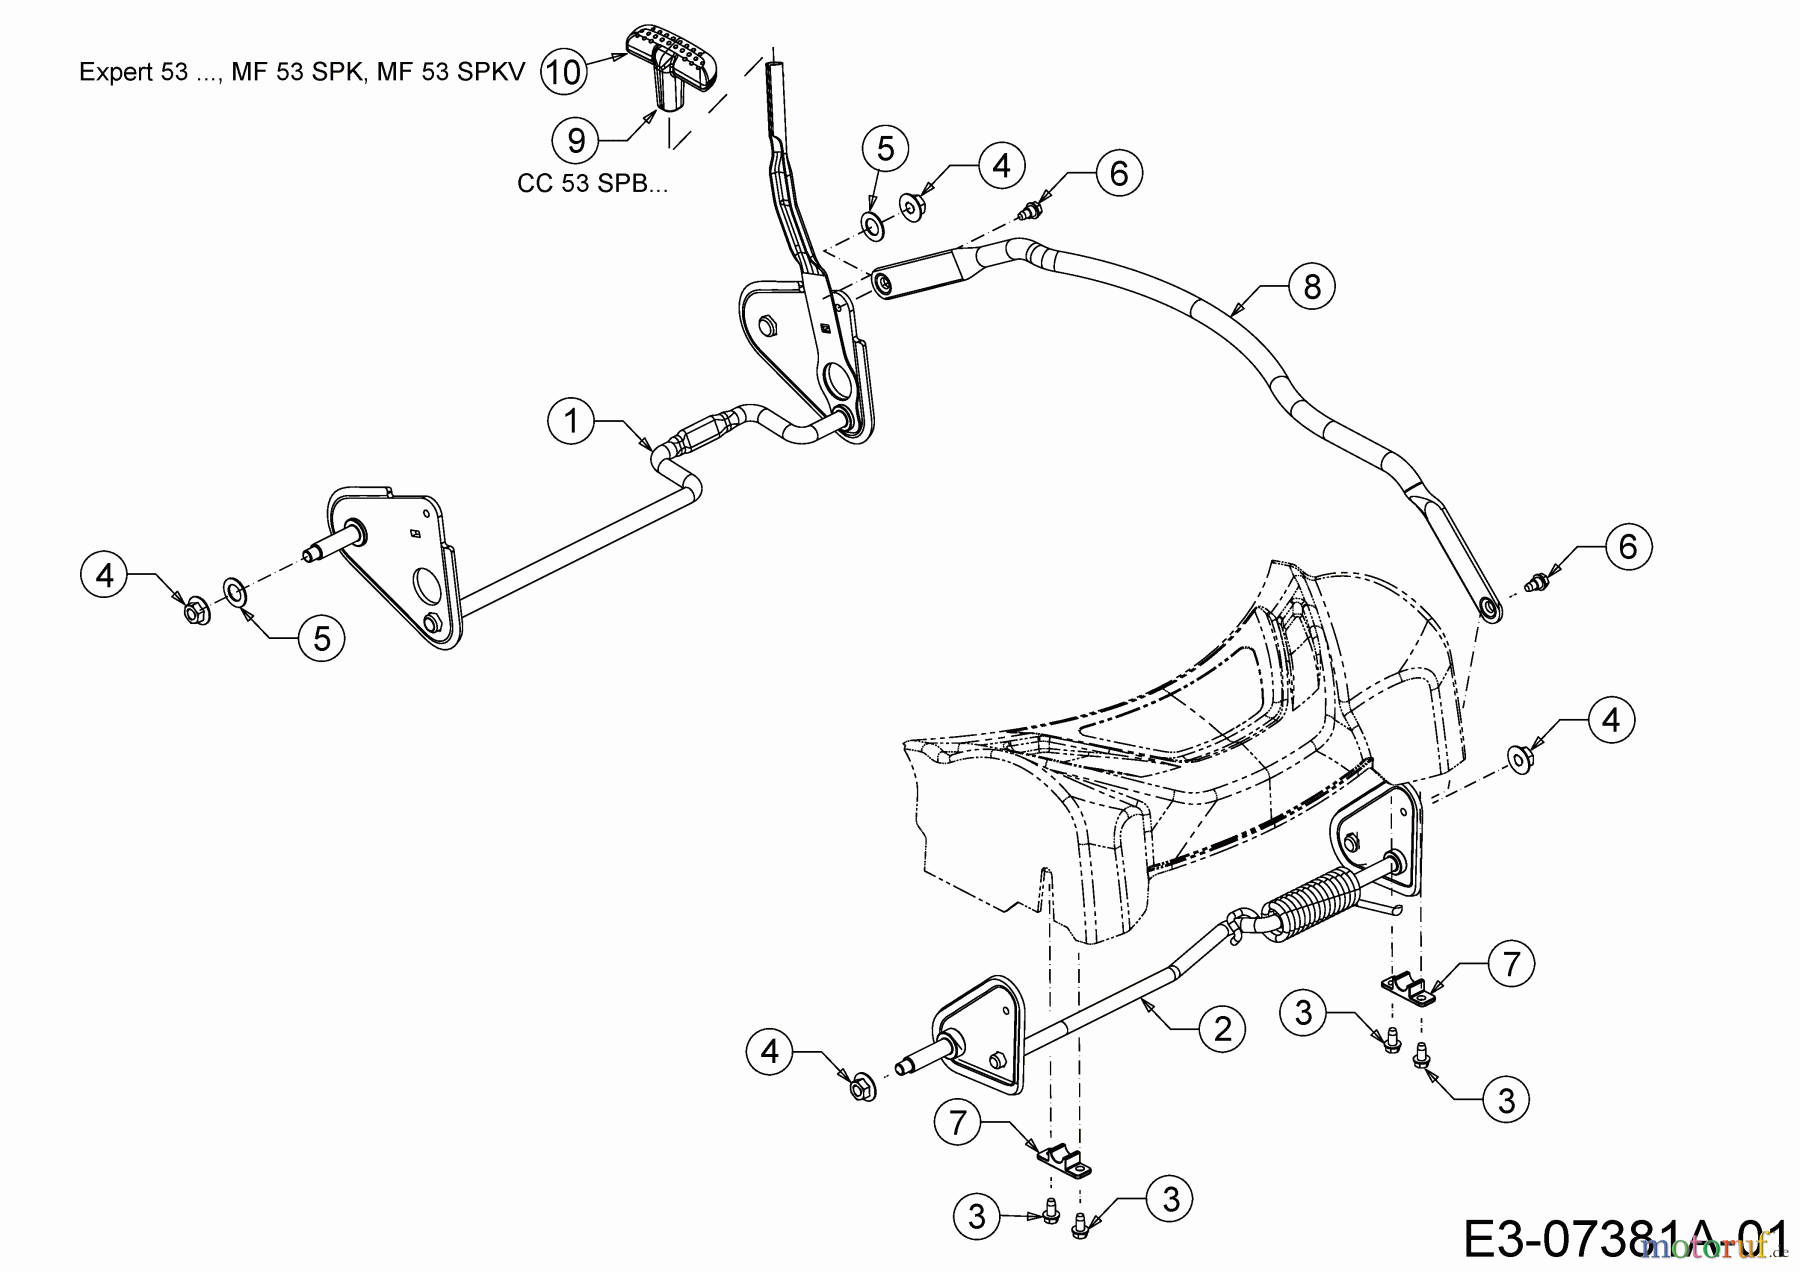  Wolf-Garten Petrol mower self propelled Expert 53 BA 12B-Q56K650  (2014) Axles, Height adjustment